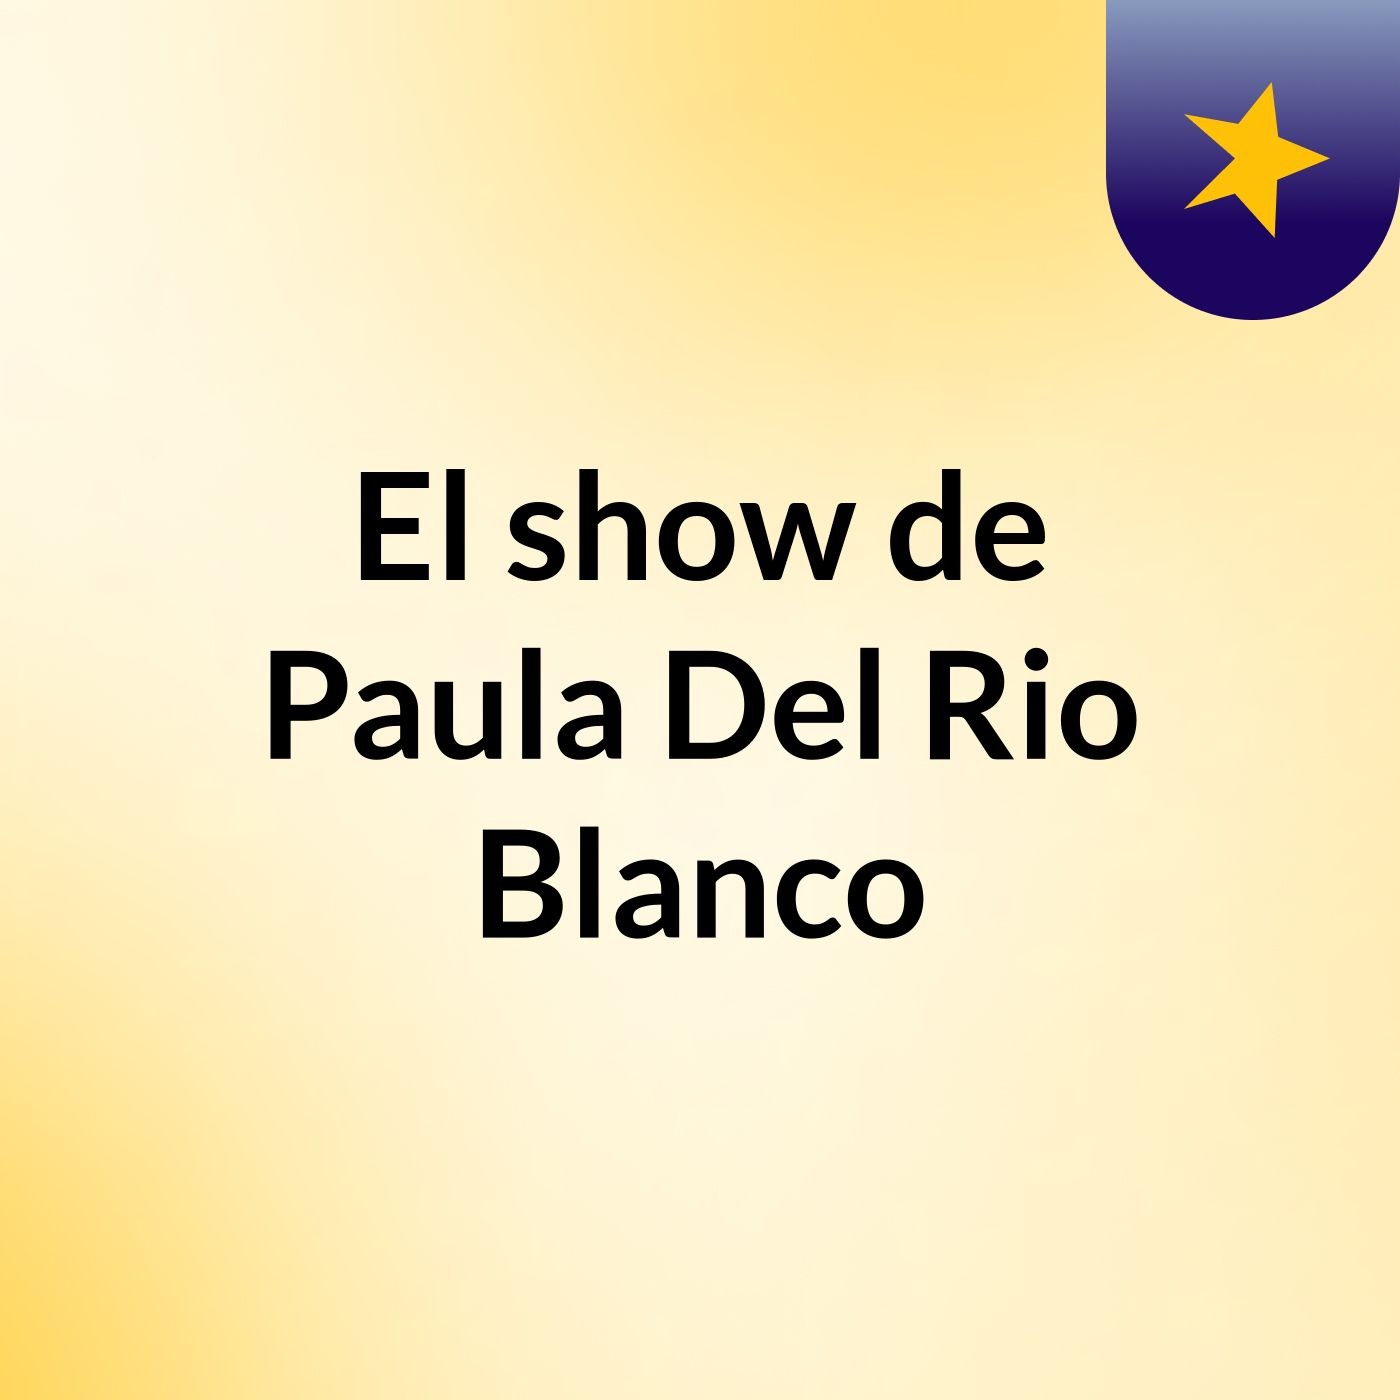 El show de Paula Del Rio Blanco